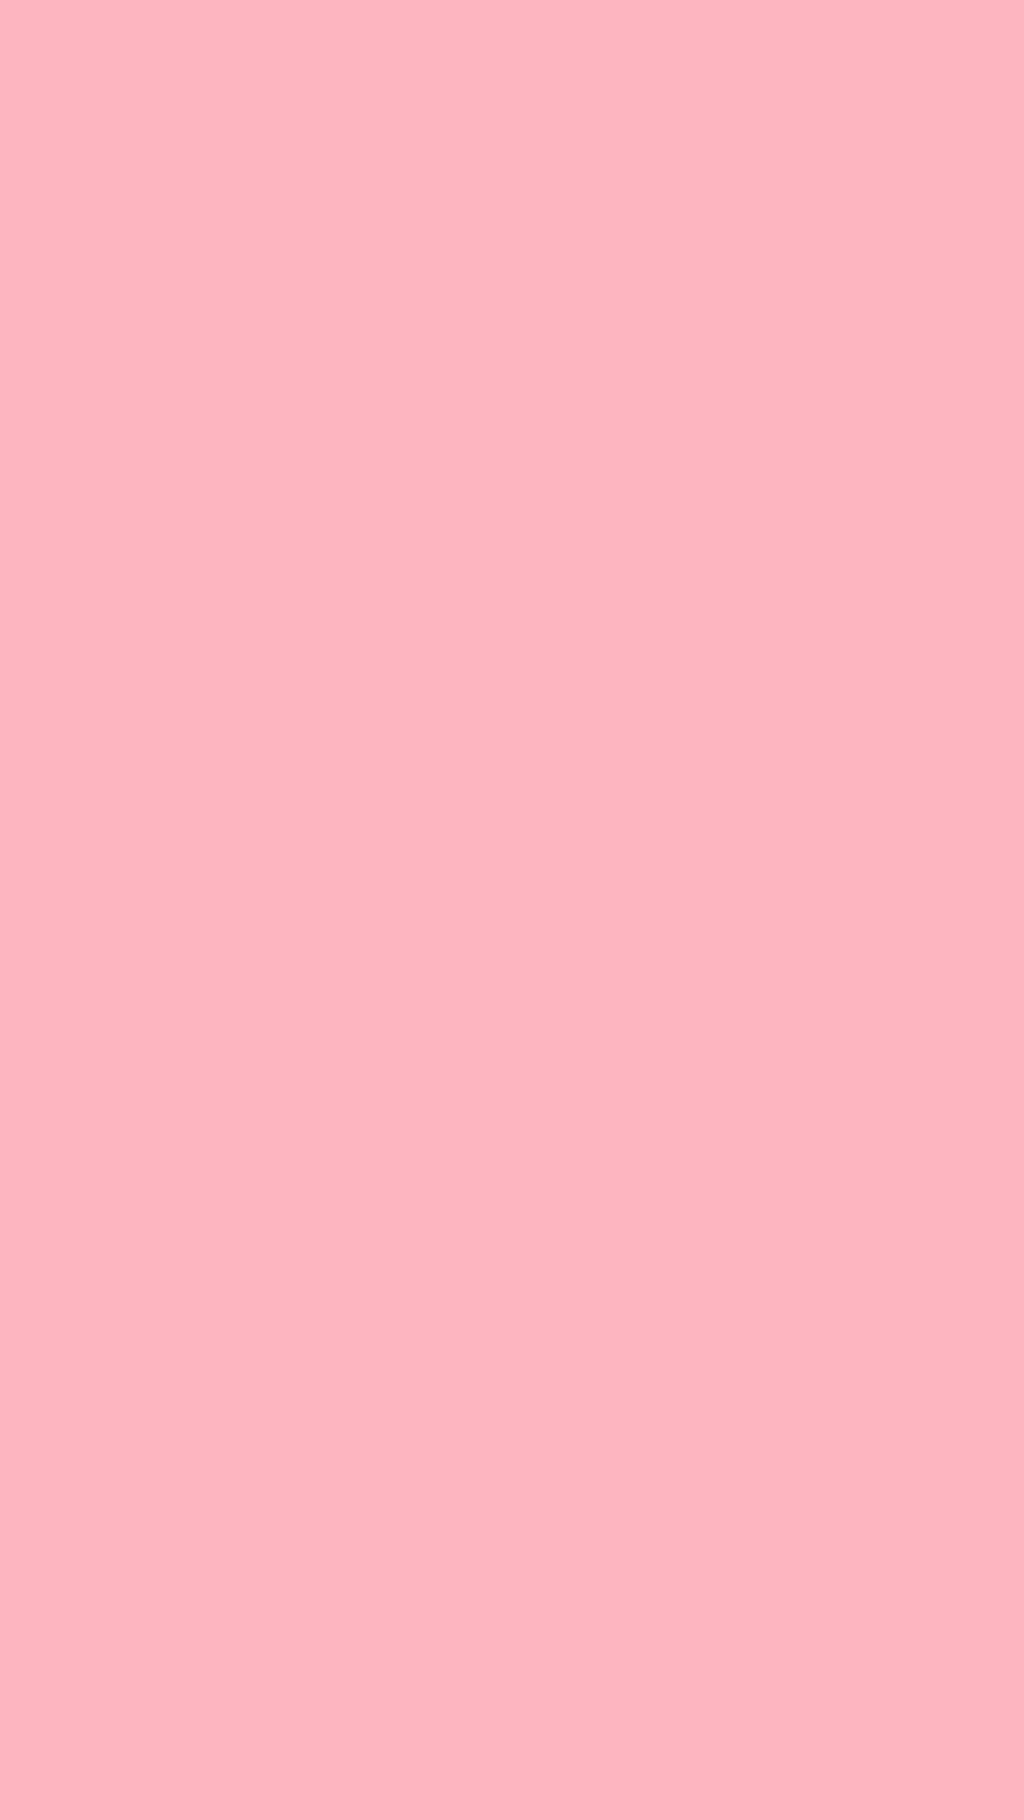 Wallpaper pink lucu lucu, gambar 4K terang dan pink tua